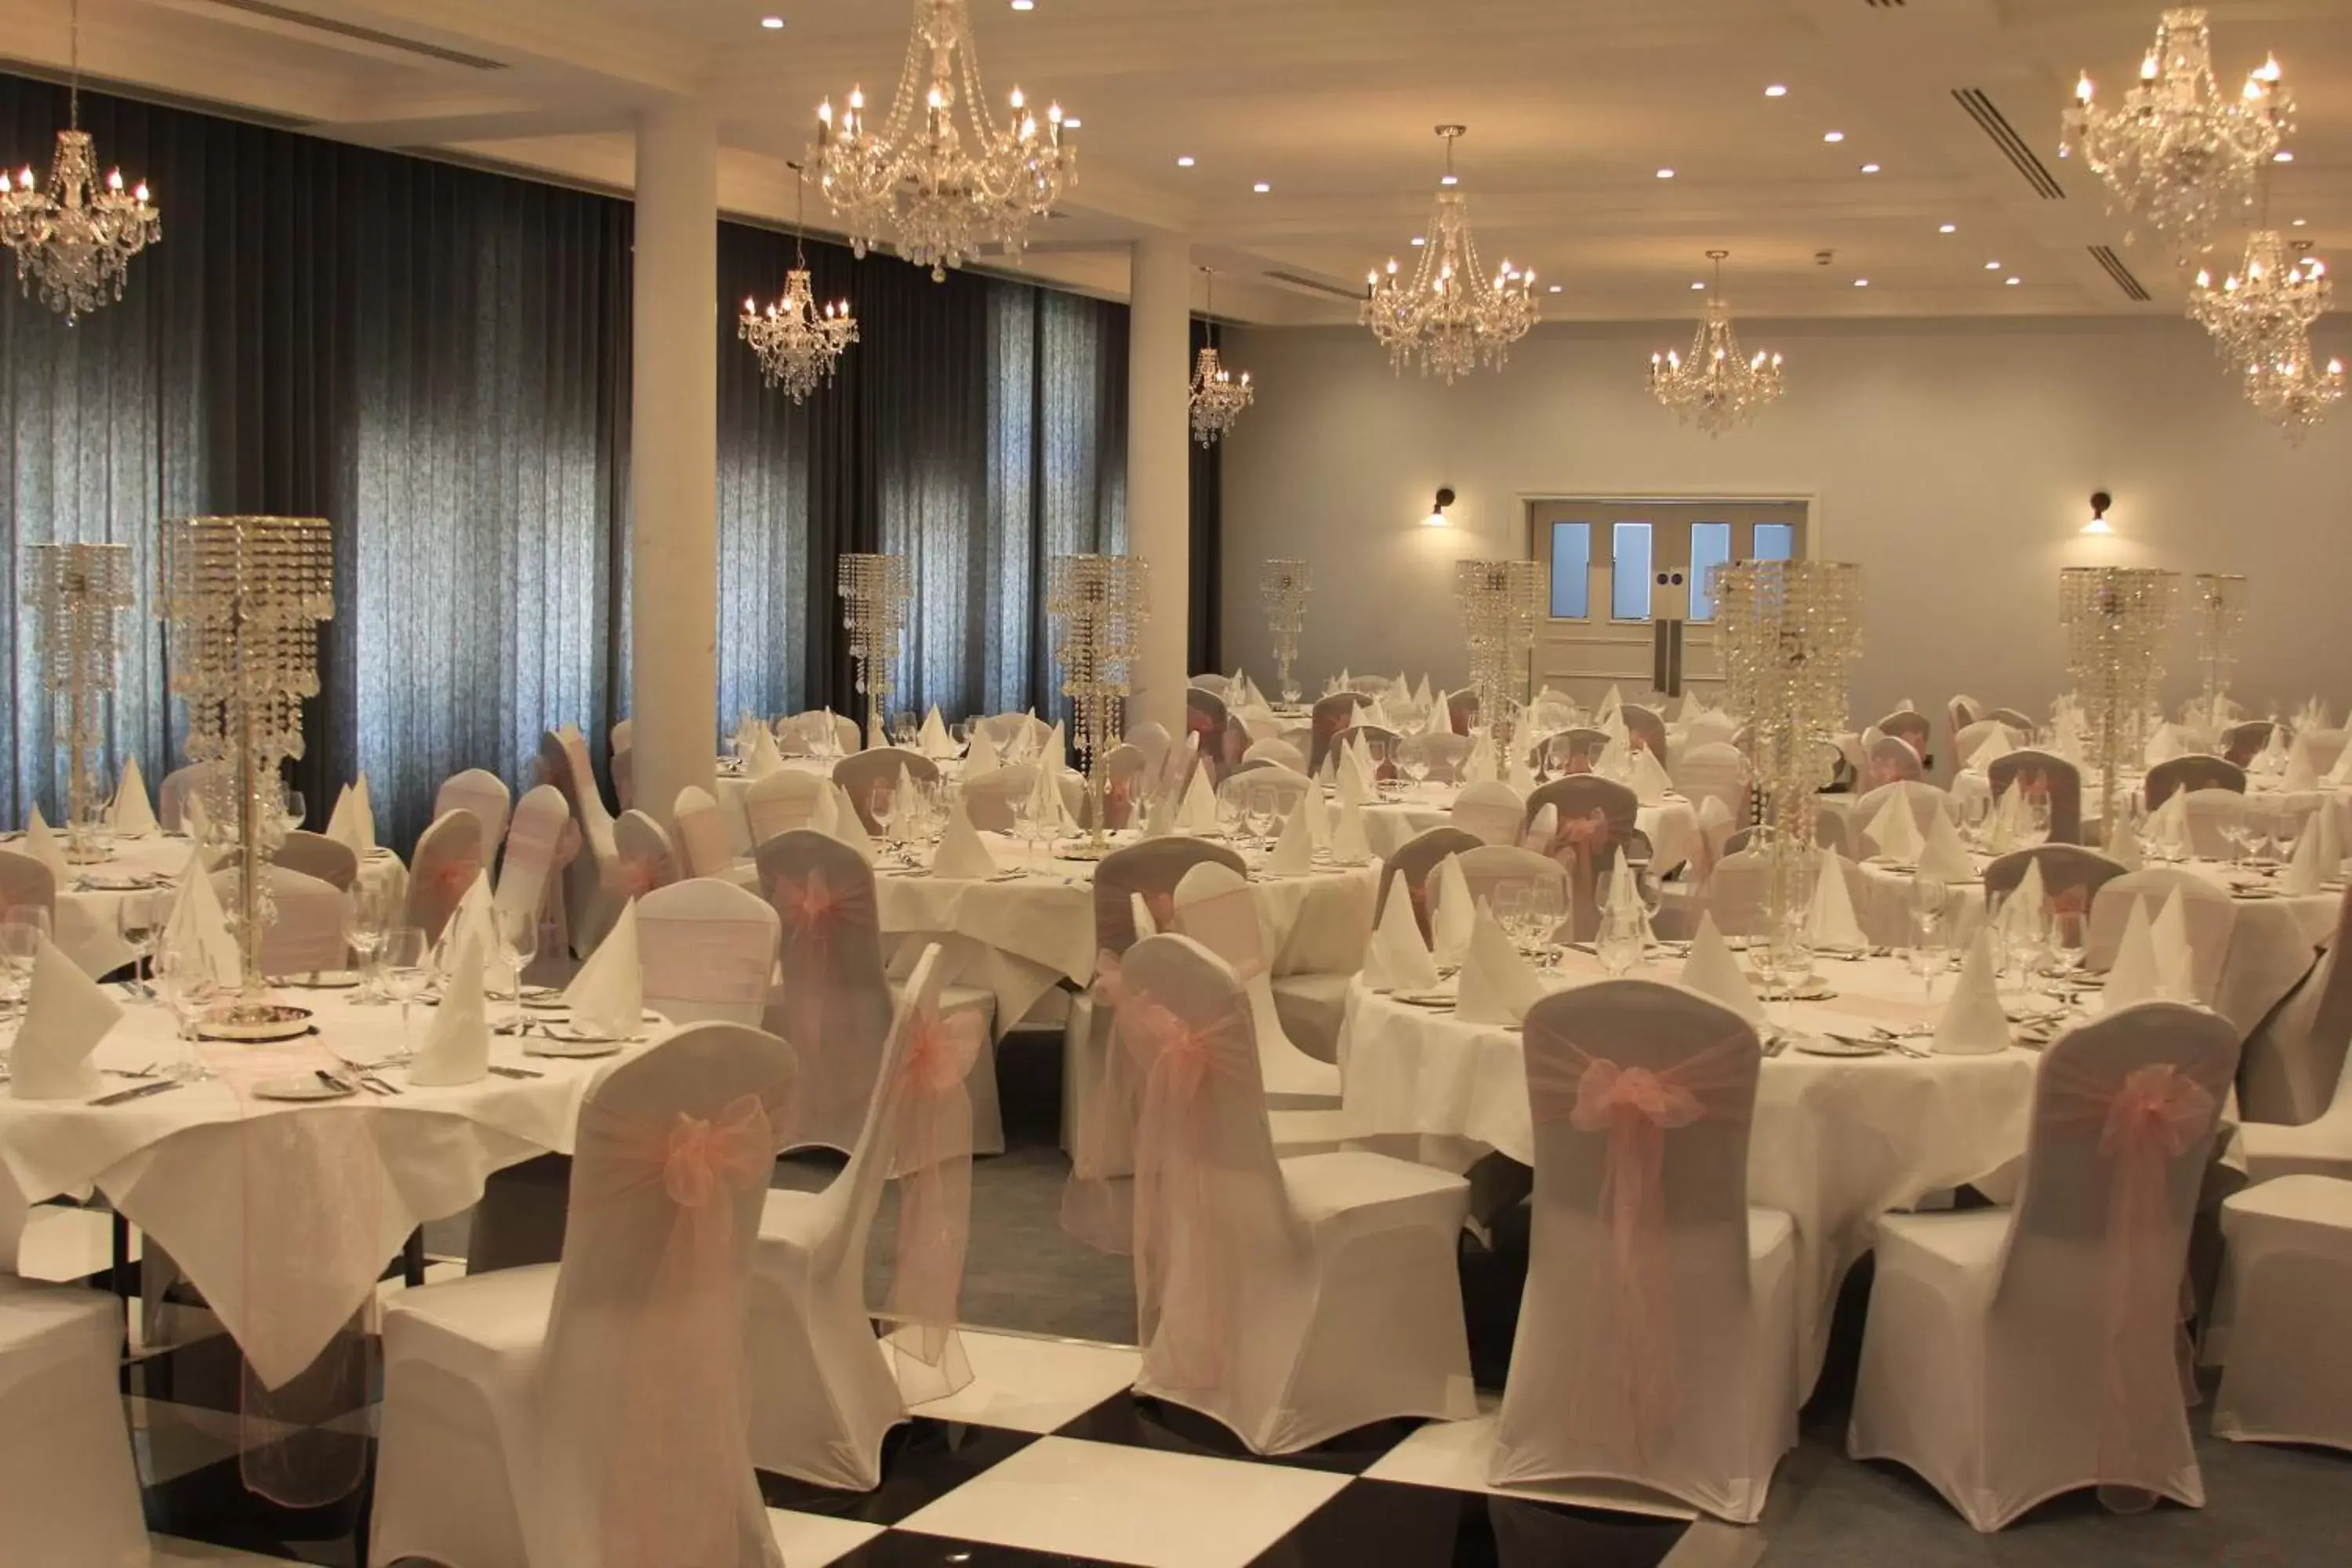 Banquet/Function facilities, Banquet Facilities in Yarrow Hotel